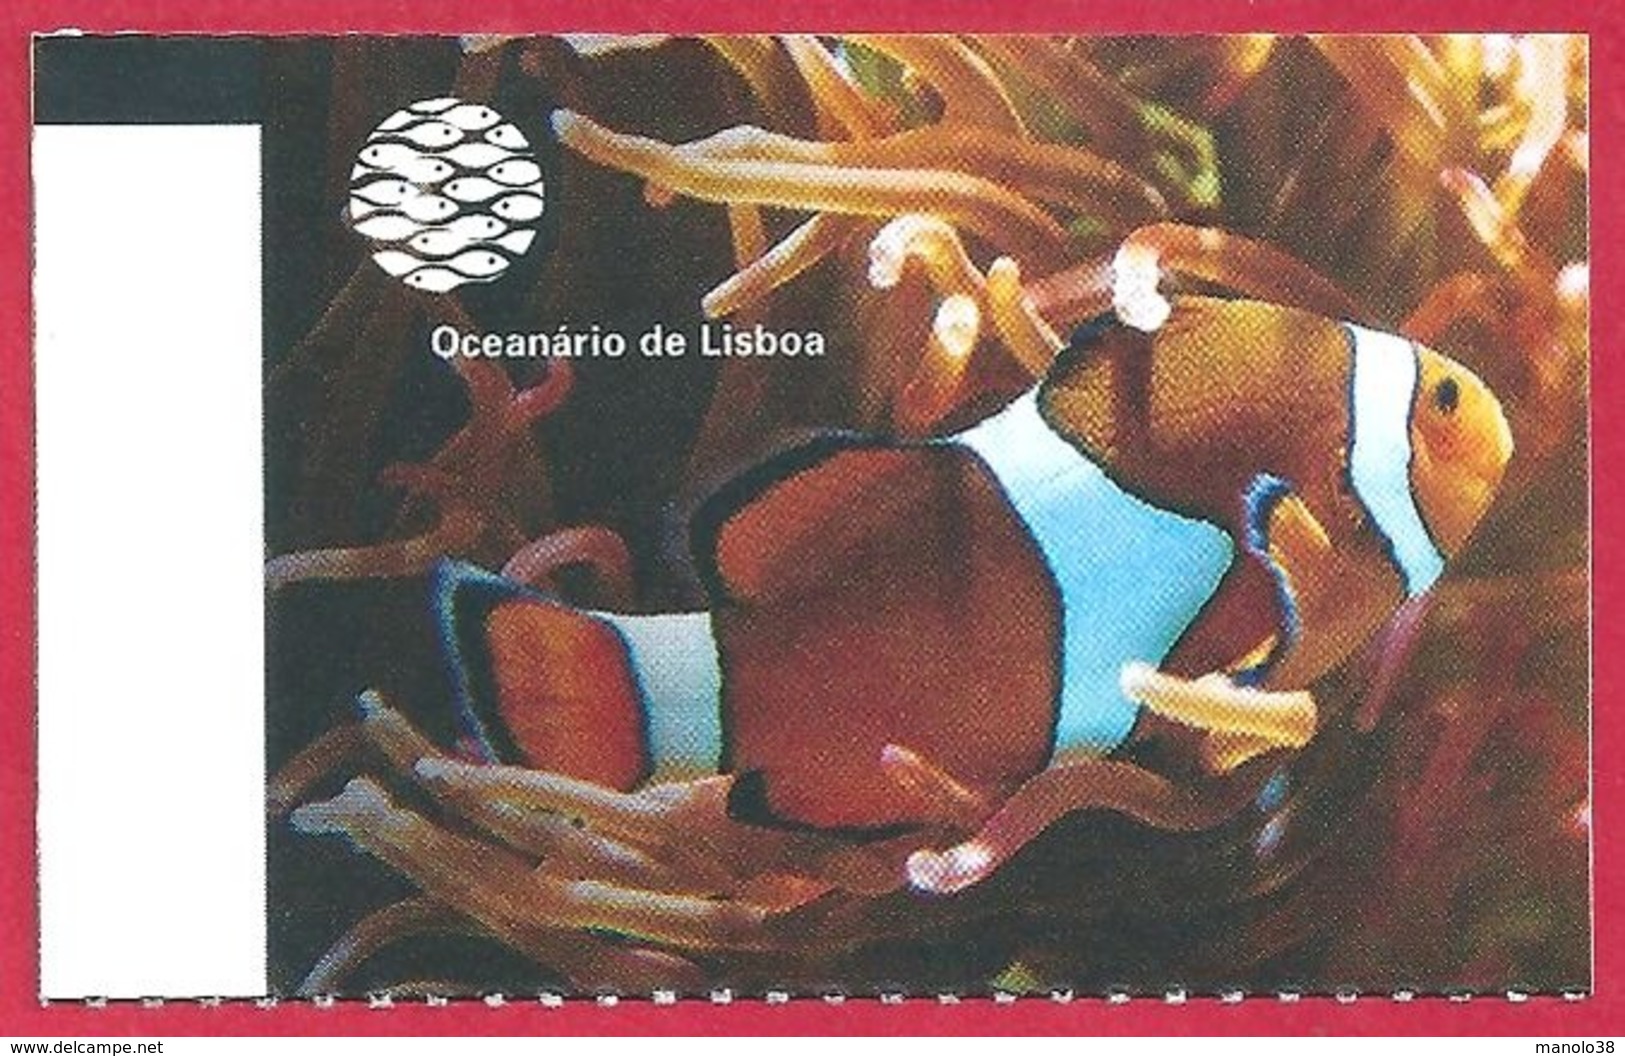 Ticket De L'aquarium De Lisbonne. Portugal. Visuel: Un Poisson Clown. 2019. - Tickets D'entrée